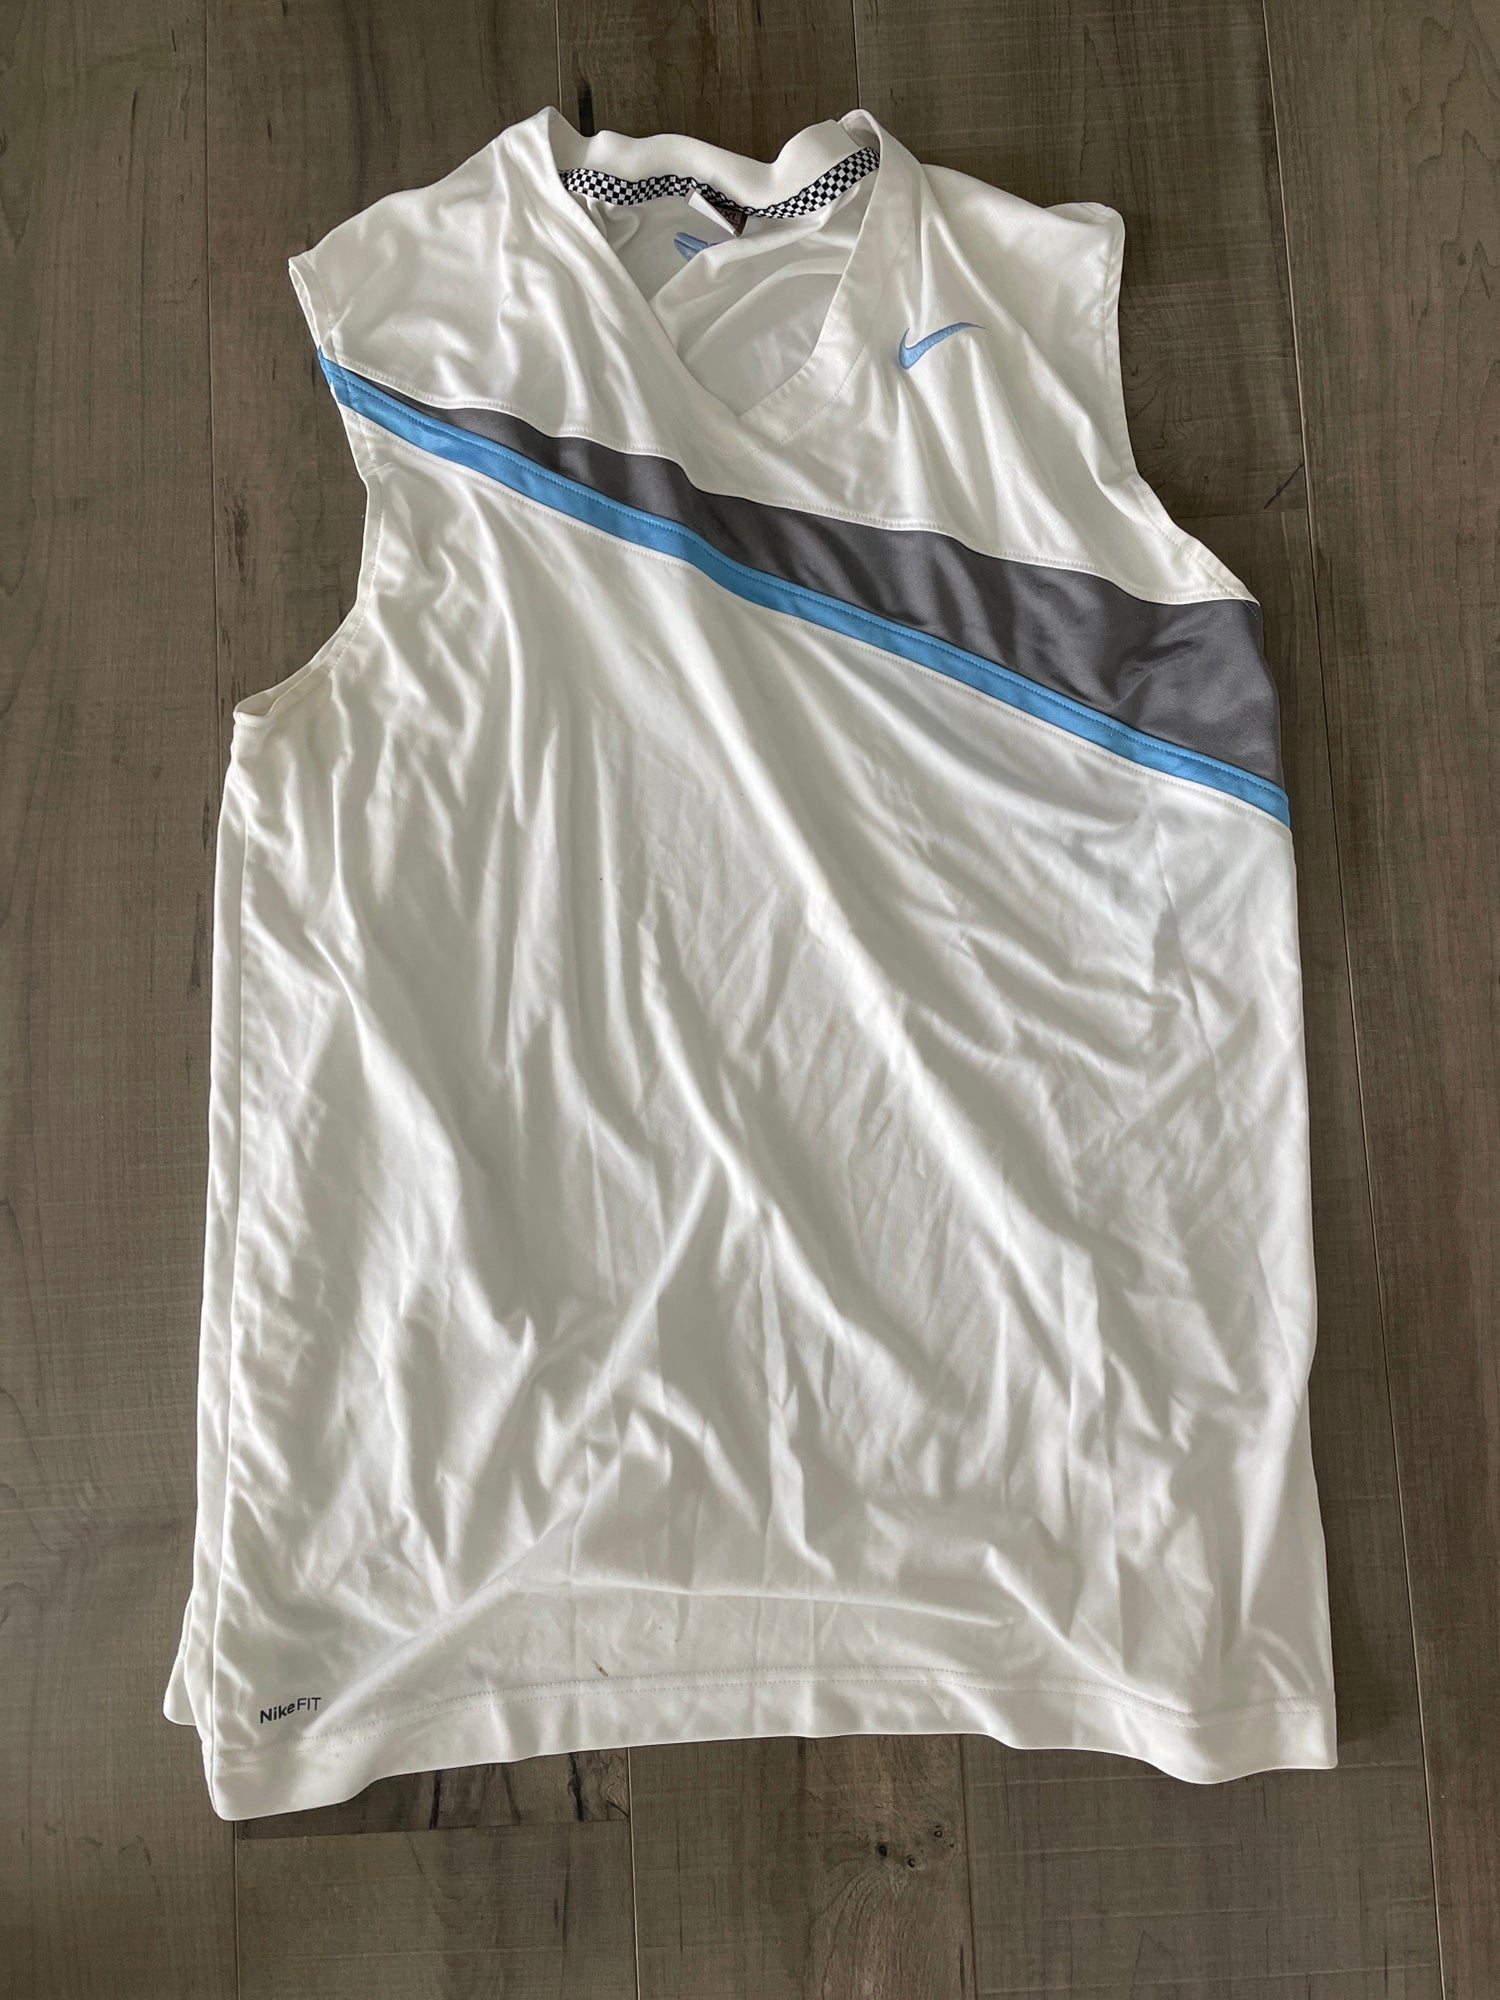 West Coast Nike Reversible Uniform – West Coast LV